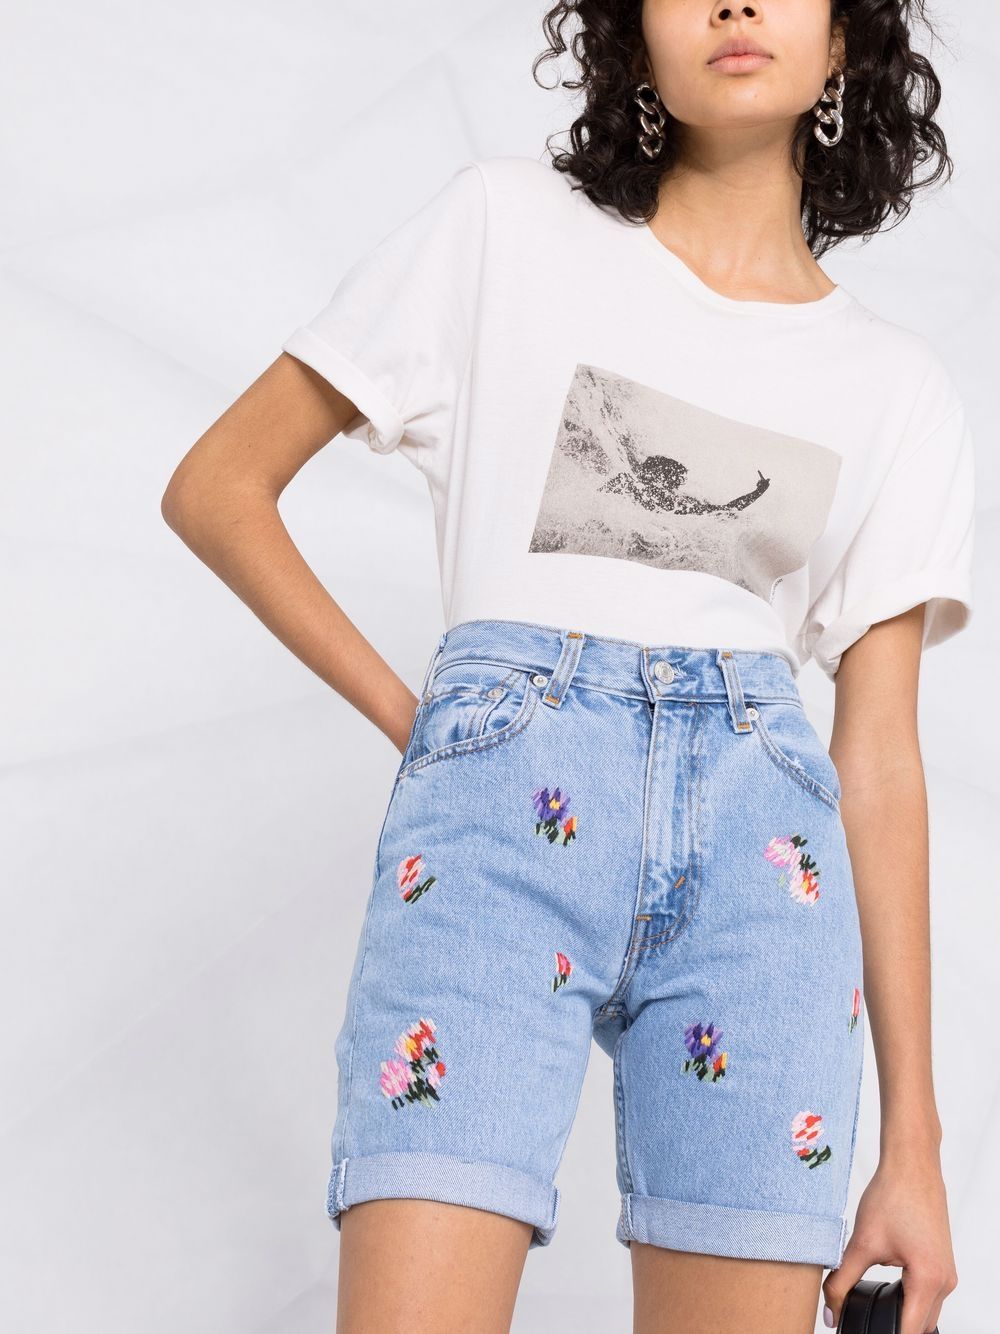 фото Semicouture джинсовые шорты mathilde с цветочной вышивкой